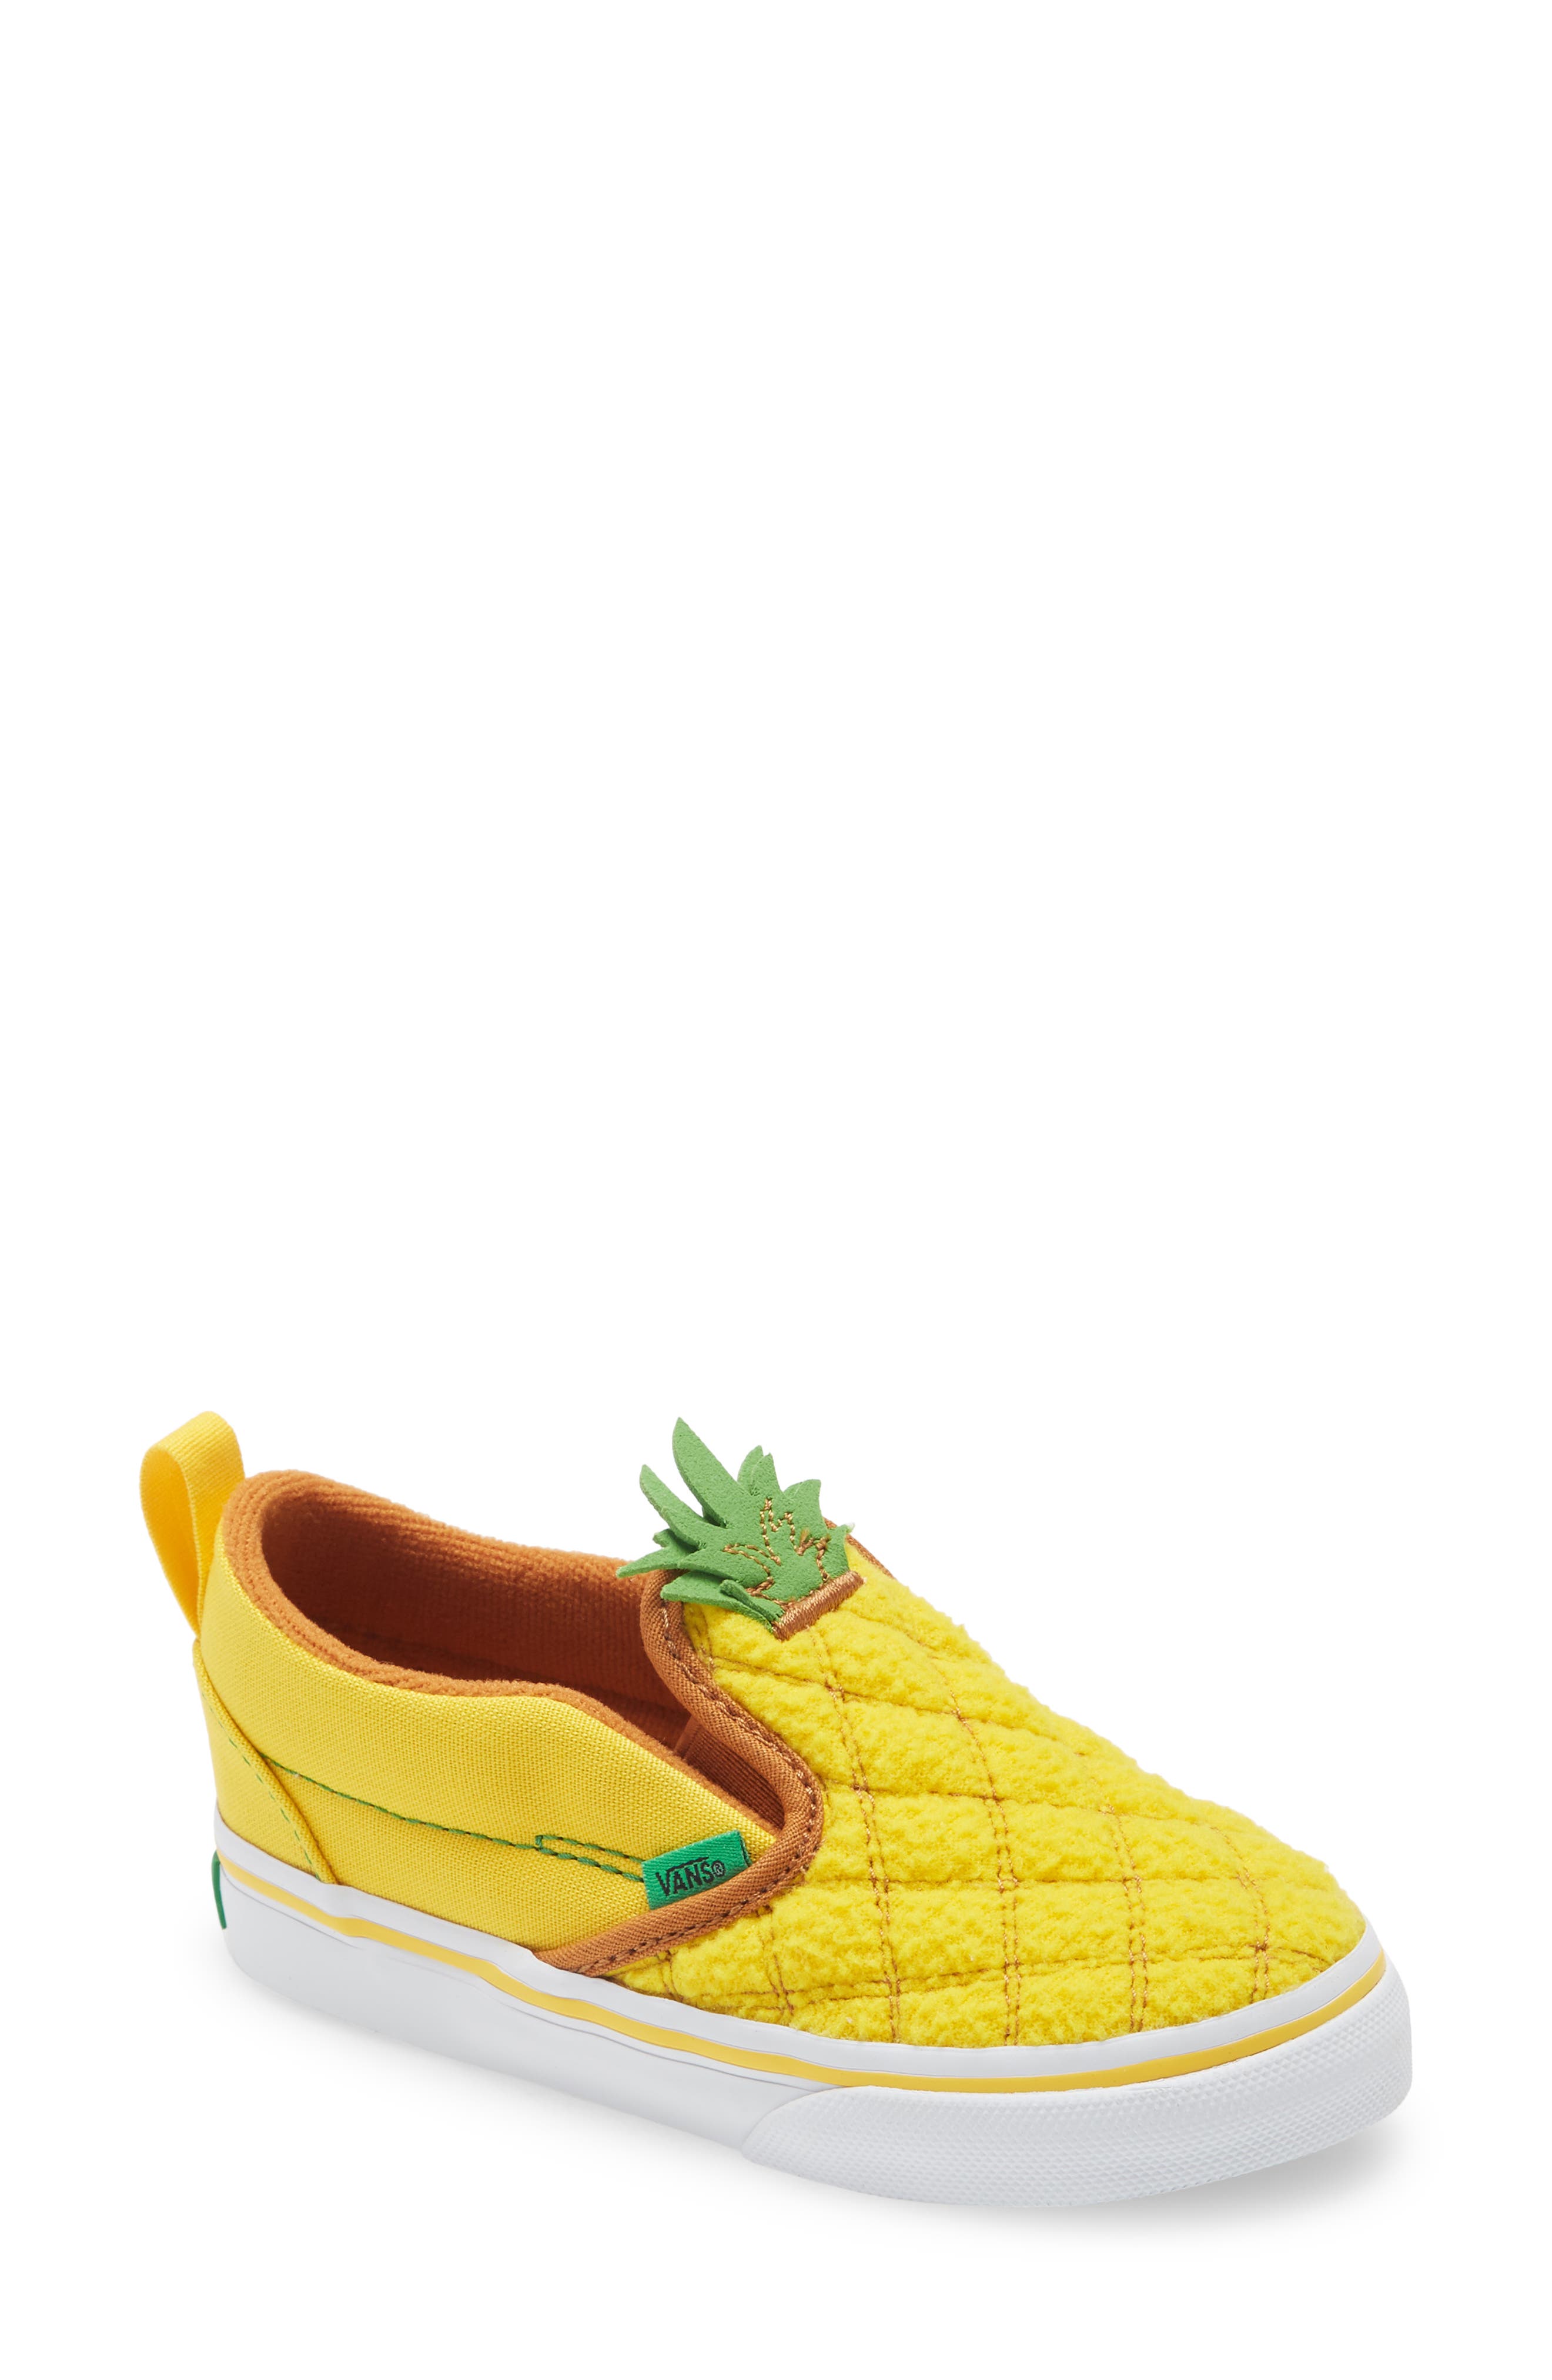 pineapple vans womens